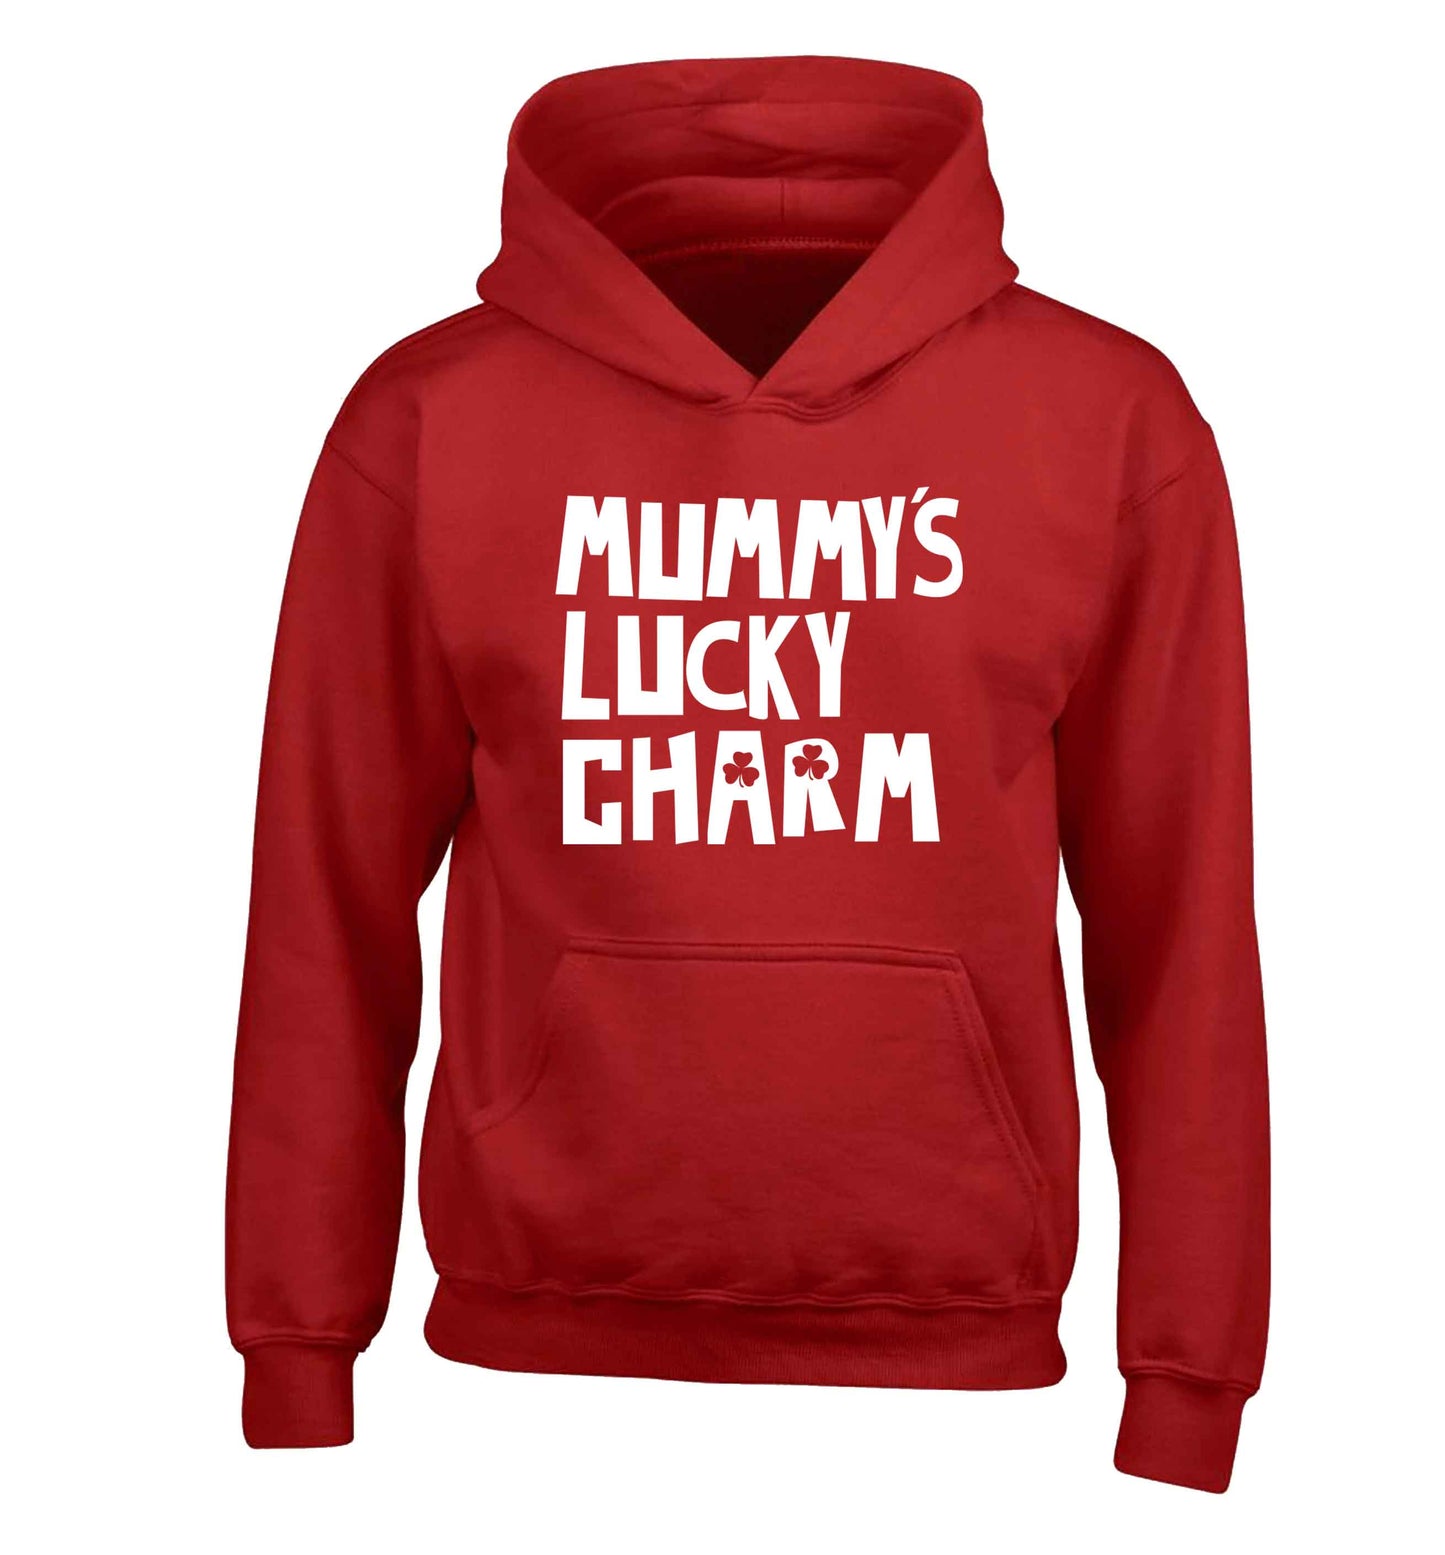 Mummy's lucky charm children's red hoodie 12-13 Years